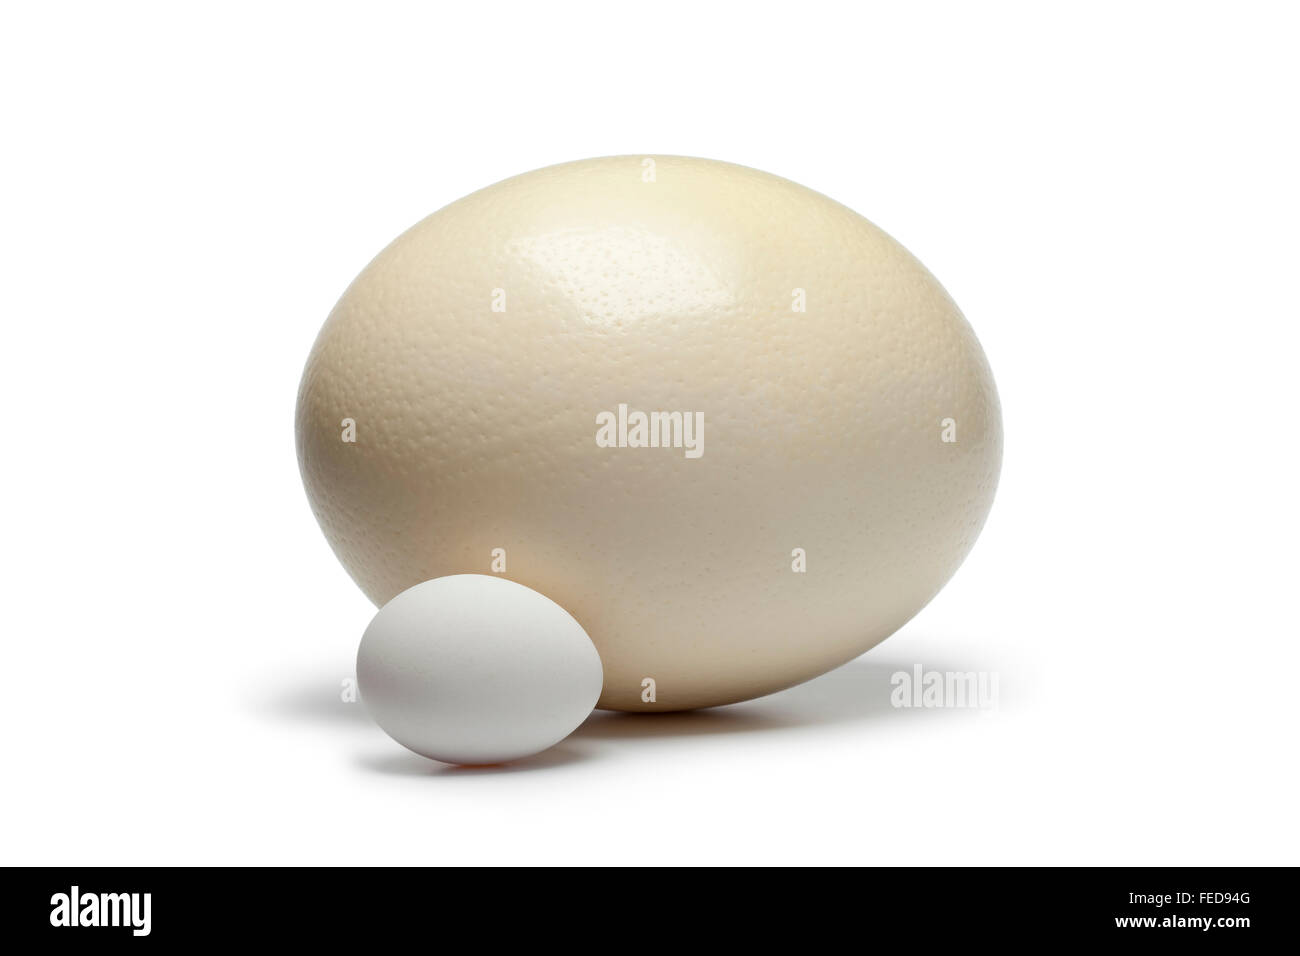 Uovo di struzzo e uovo di pollo su sfondo bianco per confrontare la dimensione Foto Stock